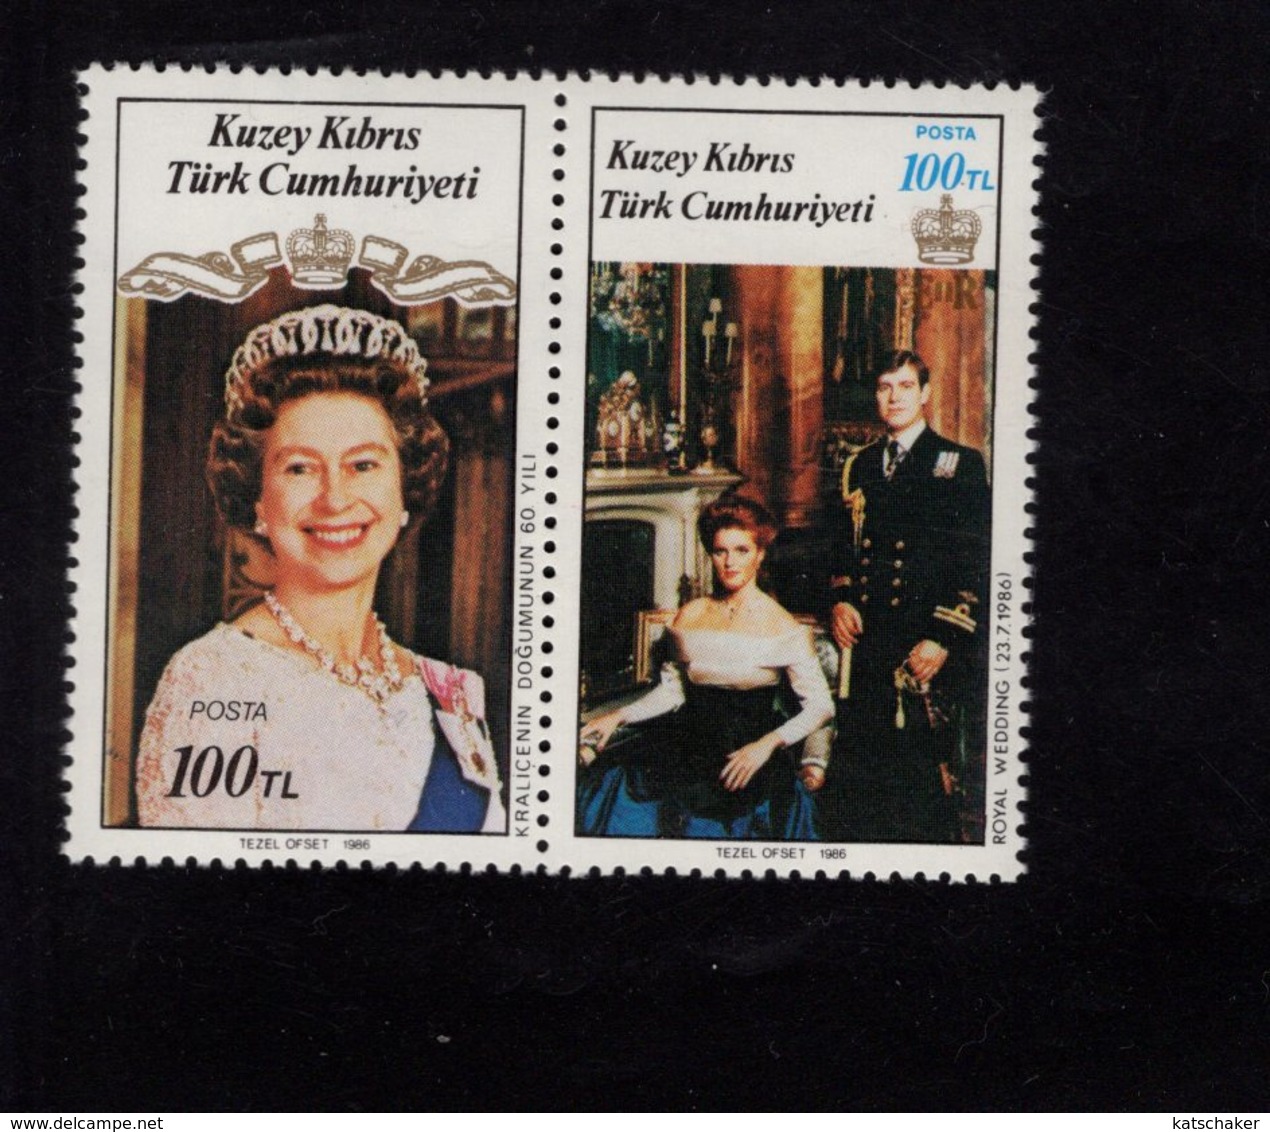 672531517 TURKISH CYPRUS 1986 POSTFRIS MINT NEVER HINGED POSTFRISCH EINWANDFREI SCOTT 195a ROYAL WEDDING - Unused Stamps